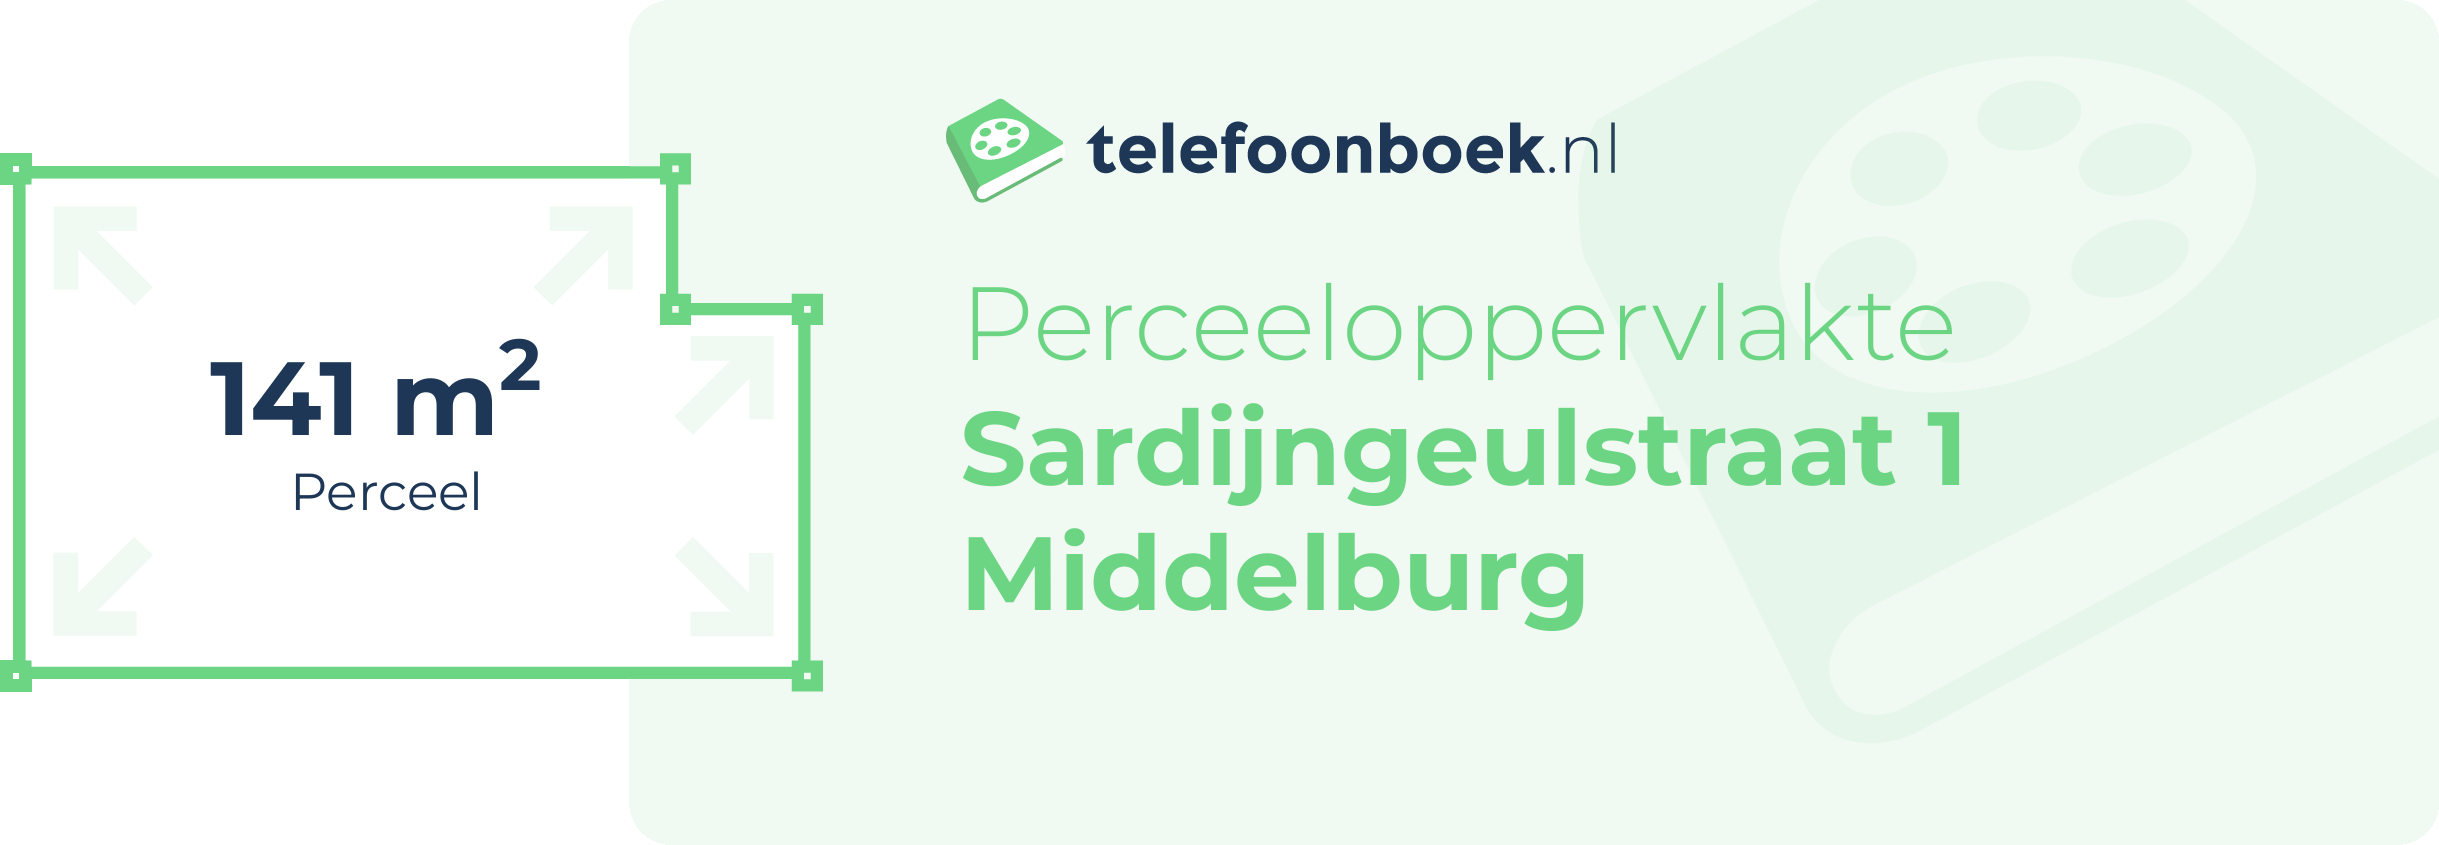 Perceeloppervlakte Sardijngeulstraat 1 Middelburg